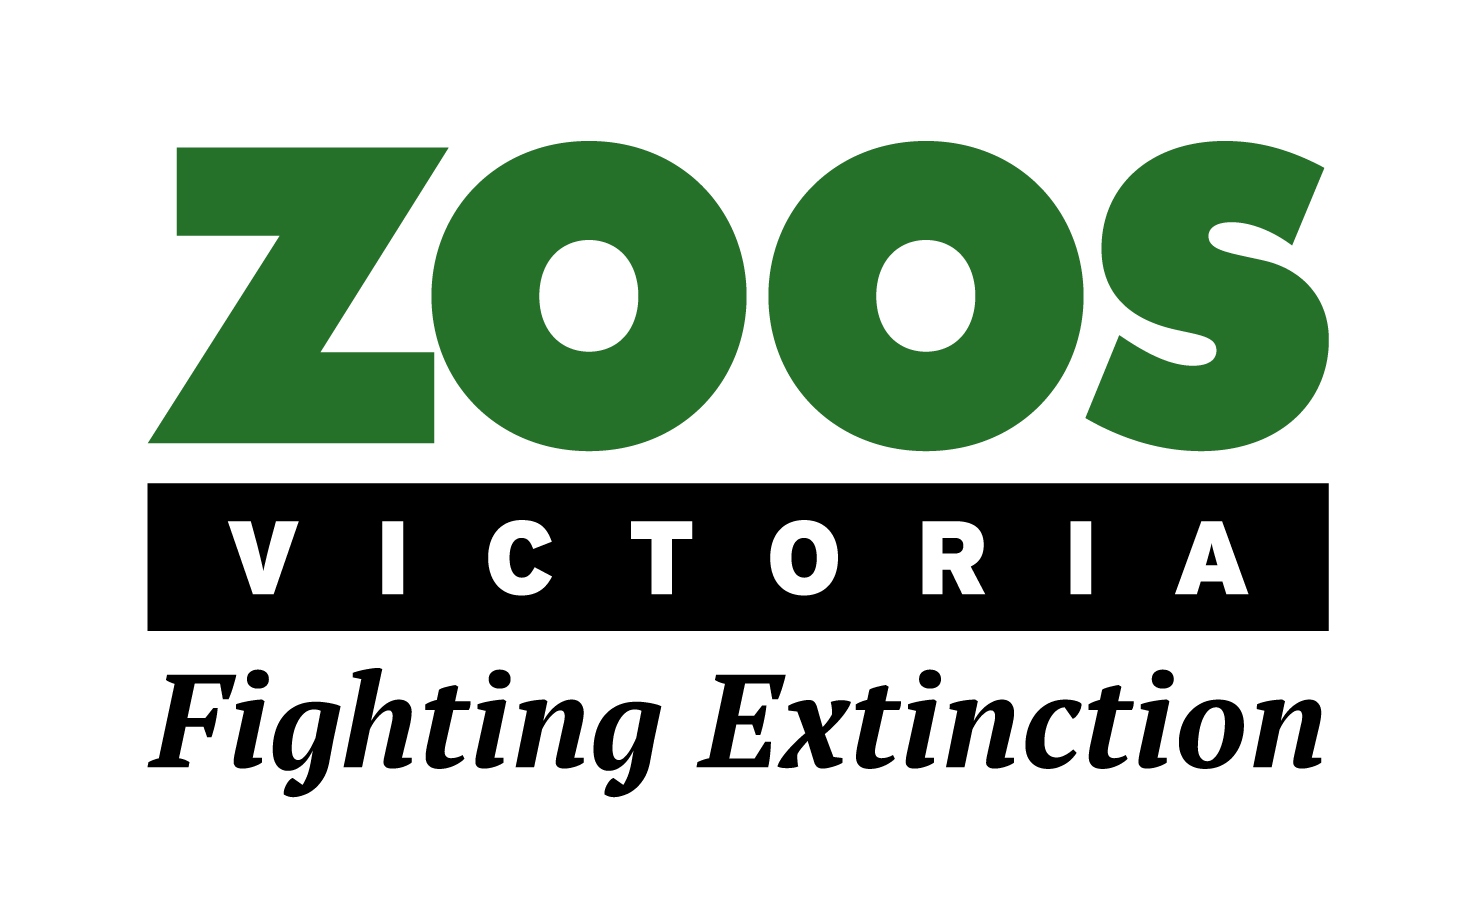 Zoos Victoria logo.